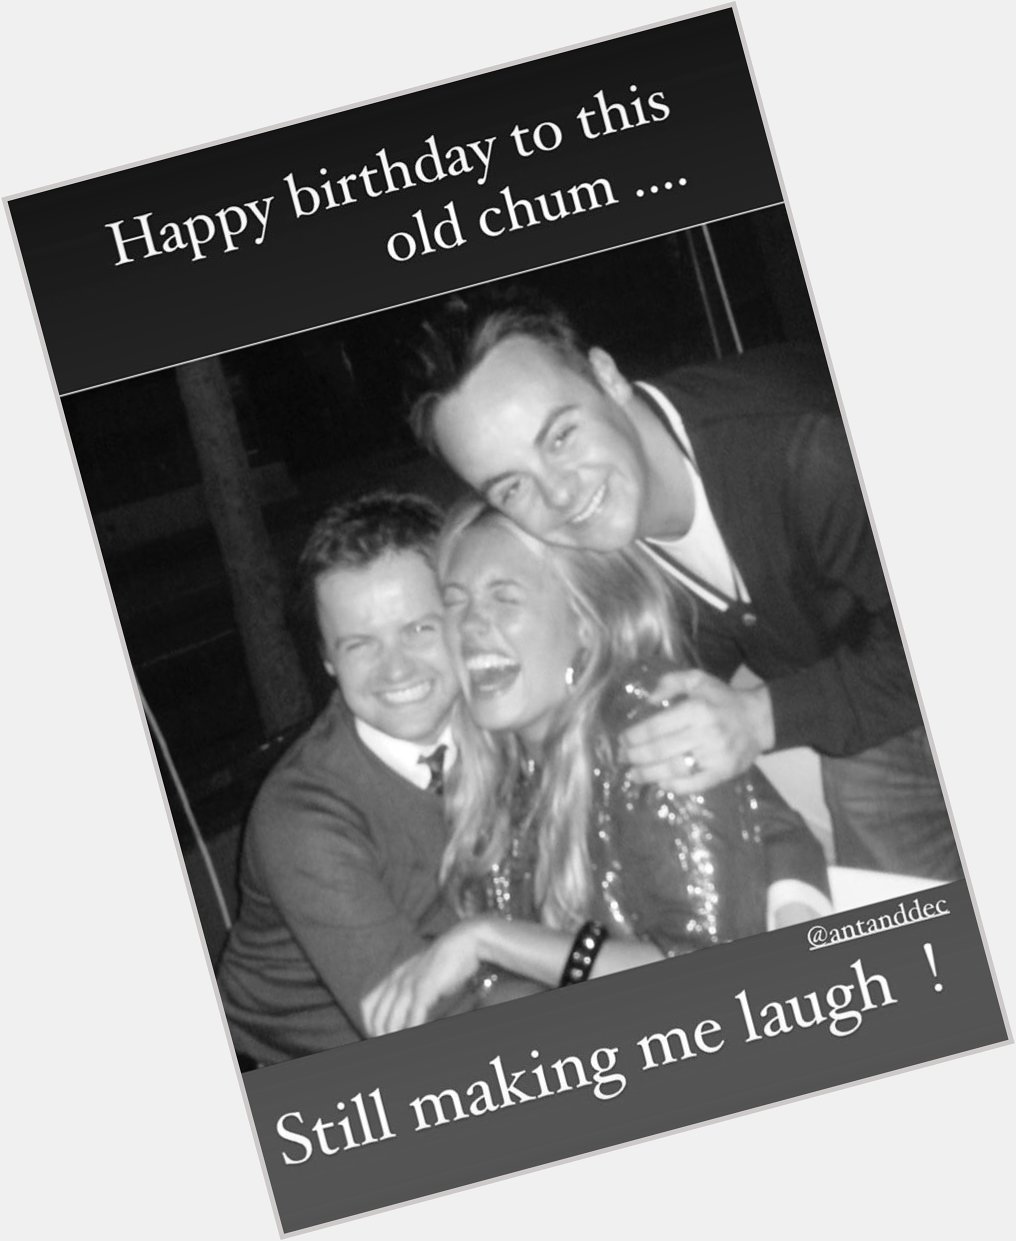  Cat Deeley wishing Dec a happy birthday 

Via her Instagram story 

25/09/20 